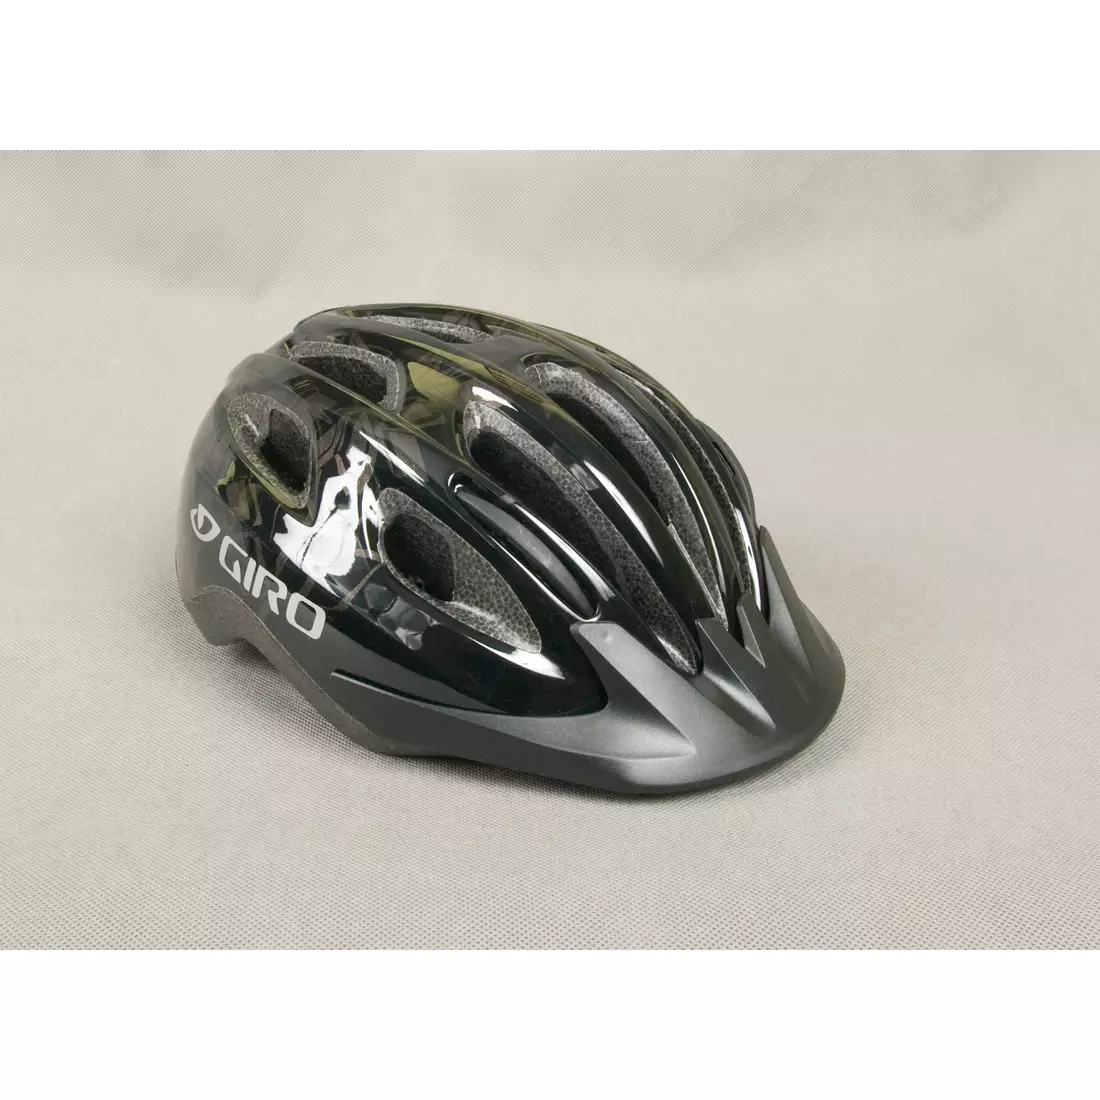 GIRO VENUS II women's bicycle helmet, color: Black